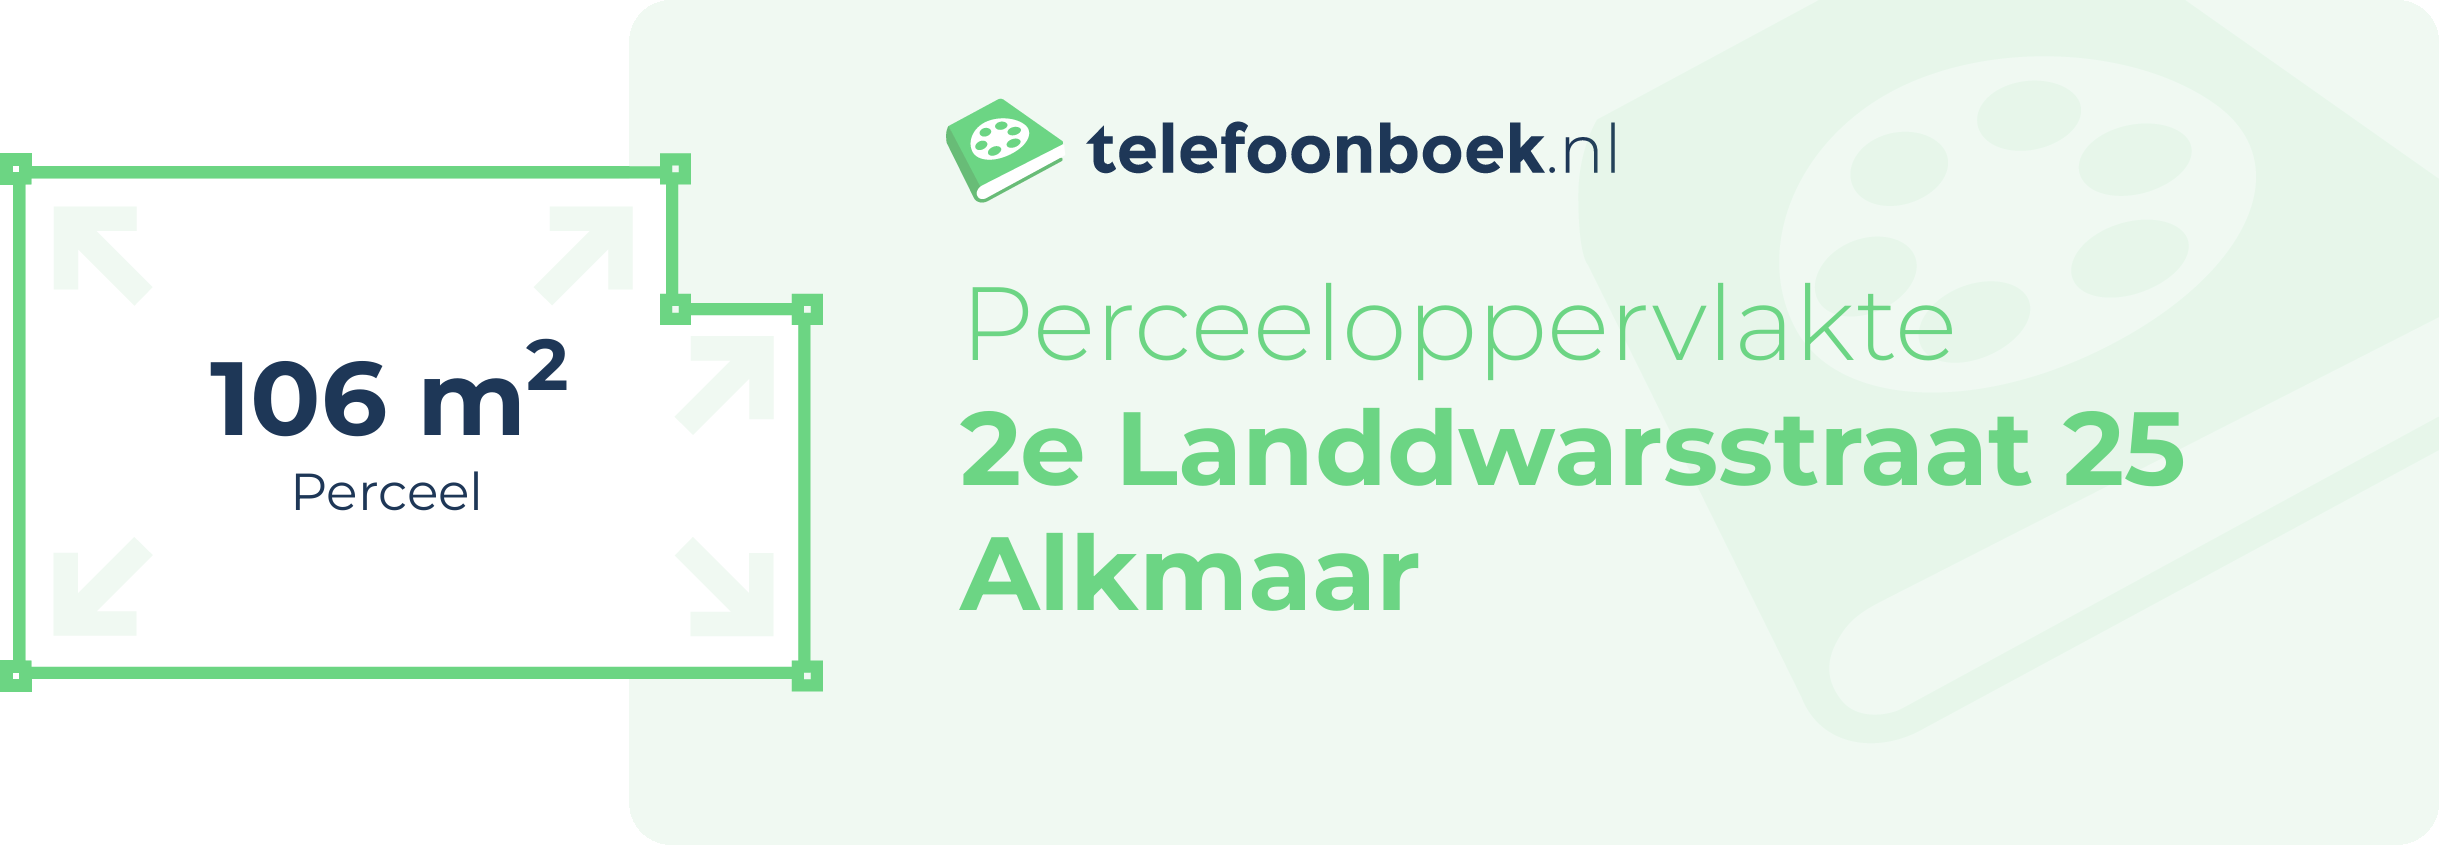 Perceeloppervlakte 2e Landdwarsstraat 25 Alkmaar